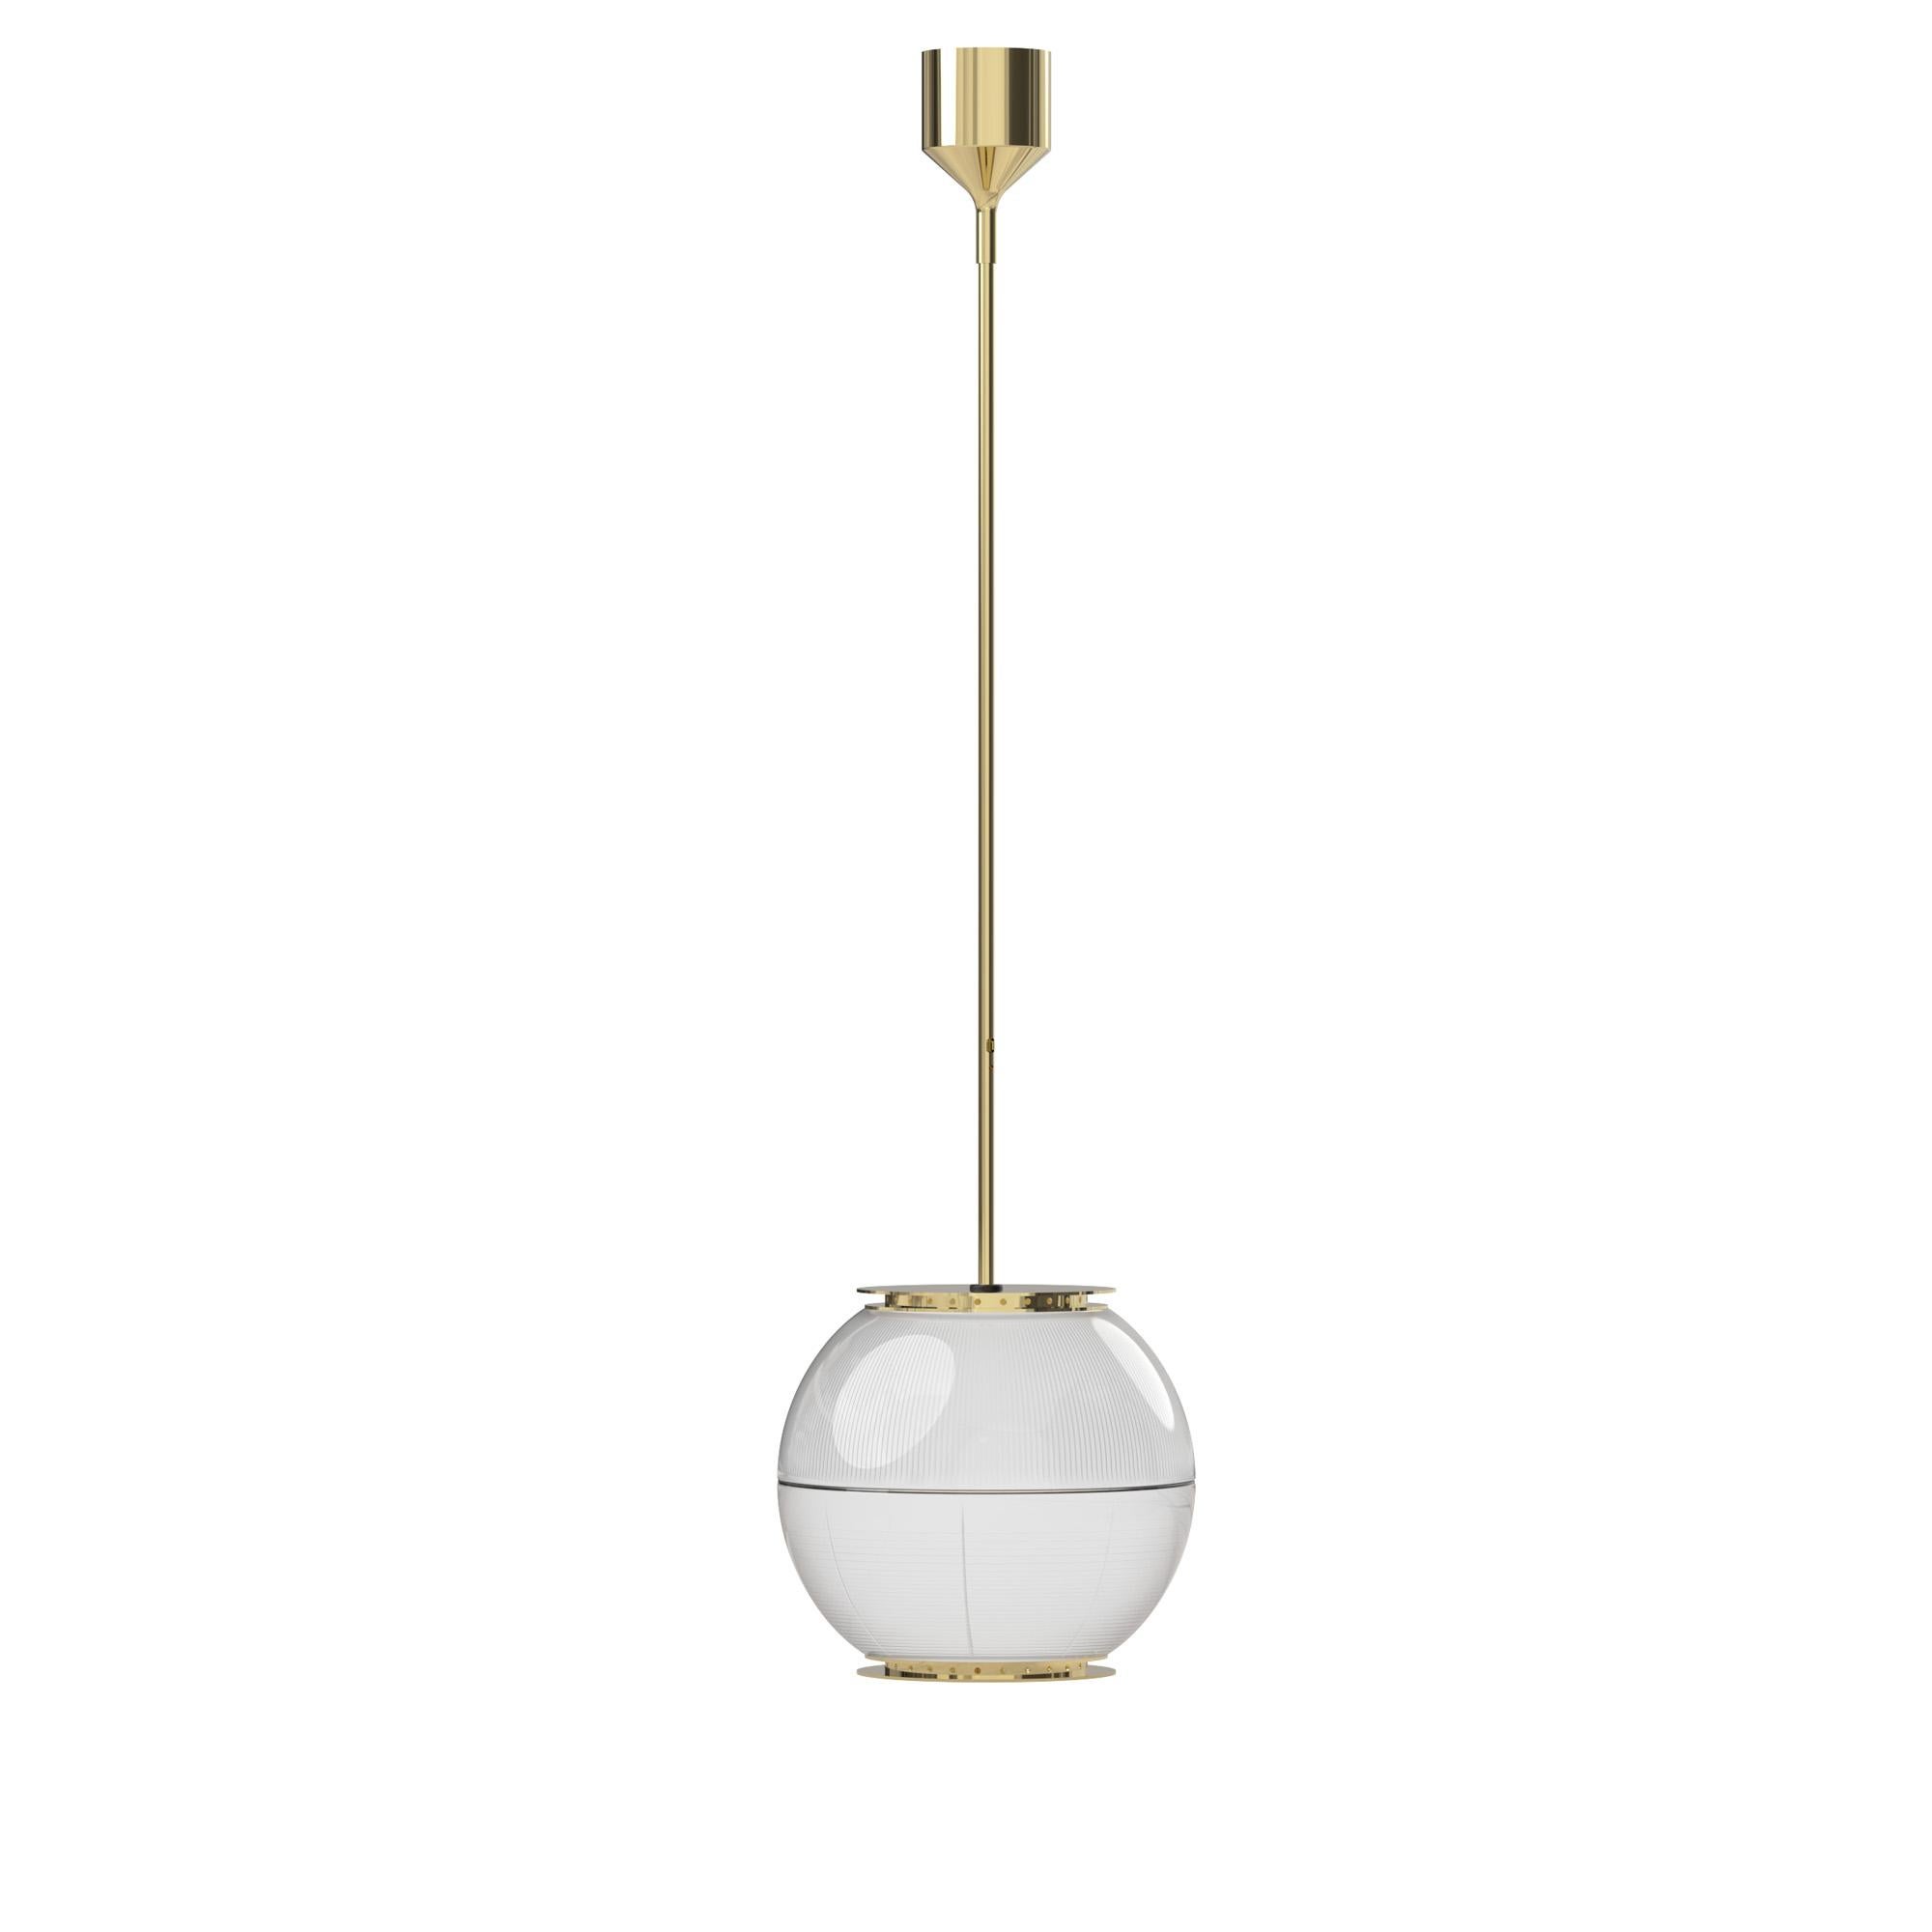 Ignazio Gardella 'Doppio Vetro' Pendant Lamp in Brass and Glass for Tato Italia In New Condition For Sale In Glendale, CA